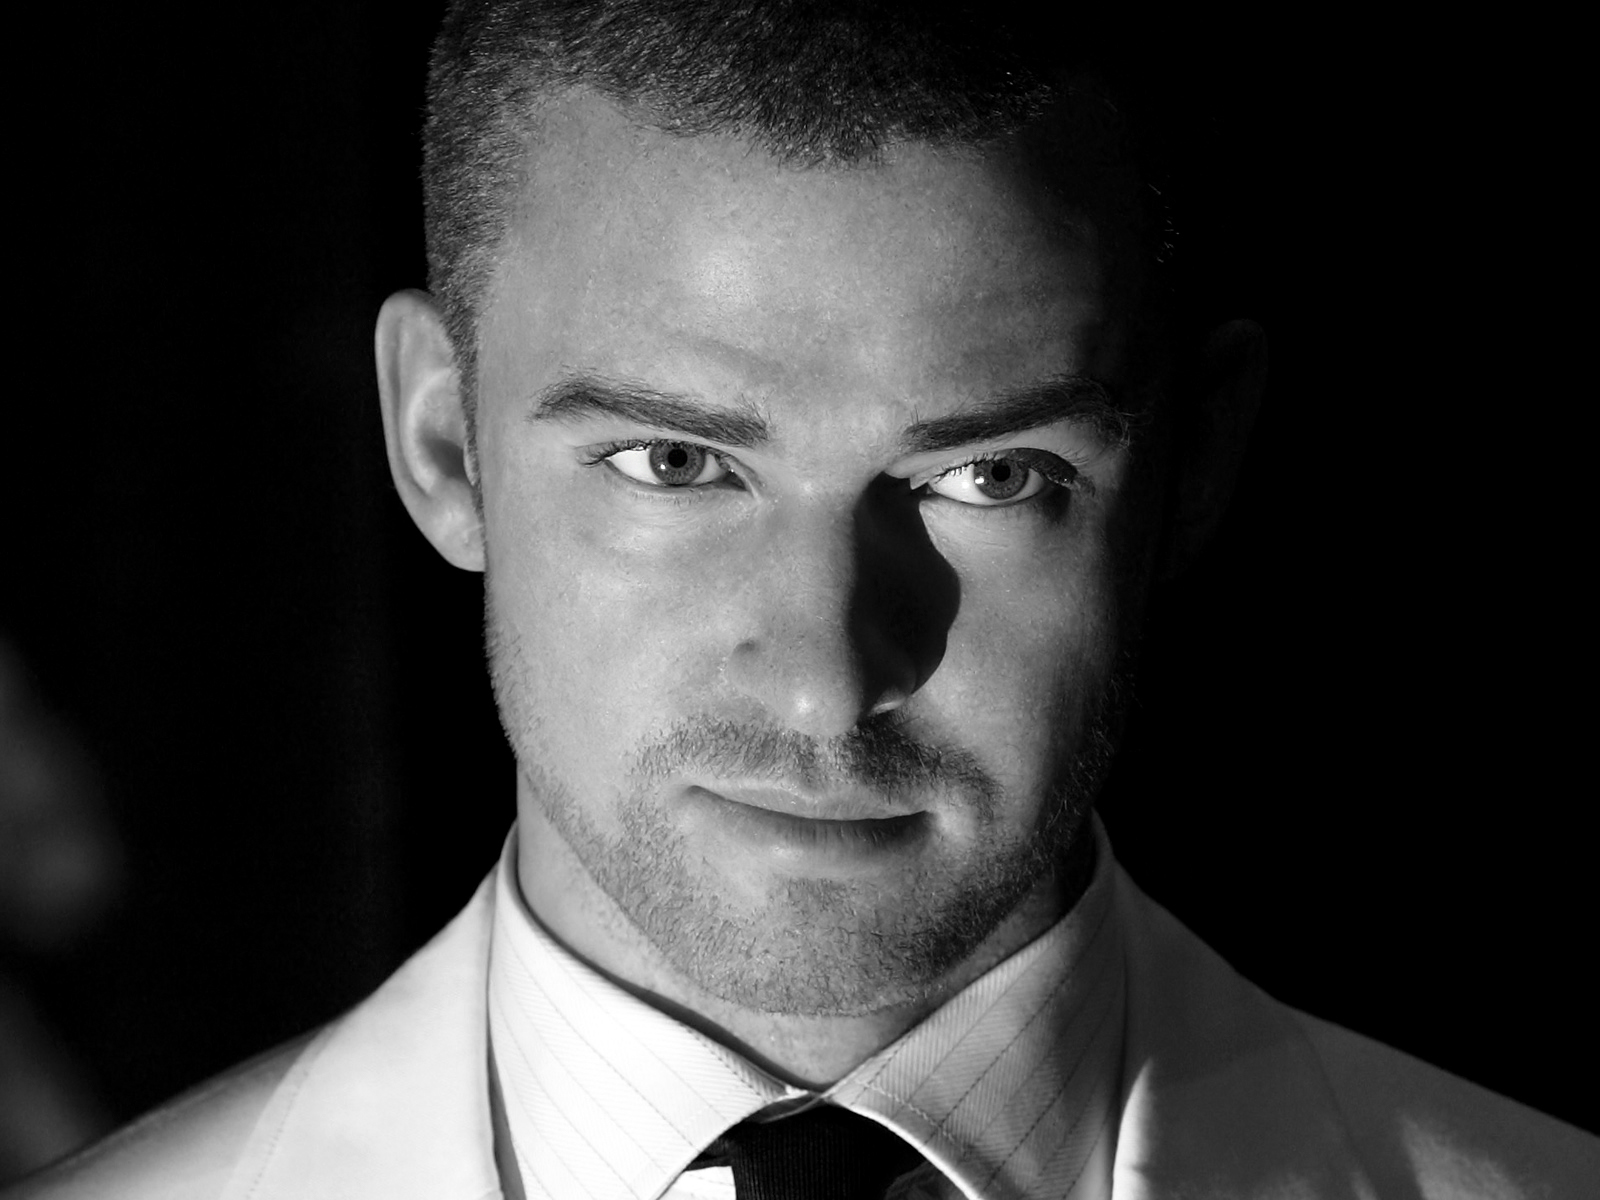 Download Photos Timberlake Justin Free HD Image HQ PNG Image